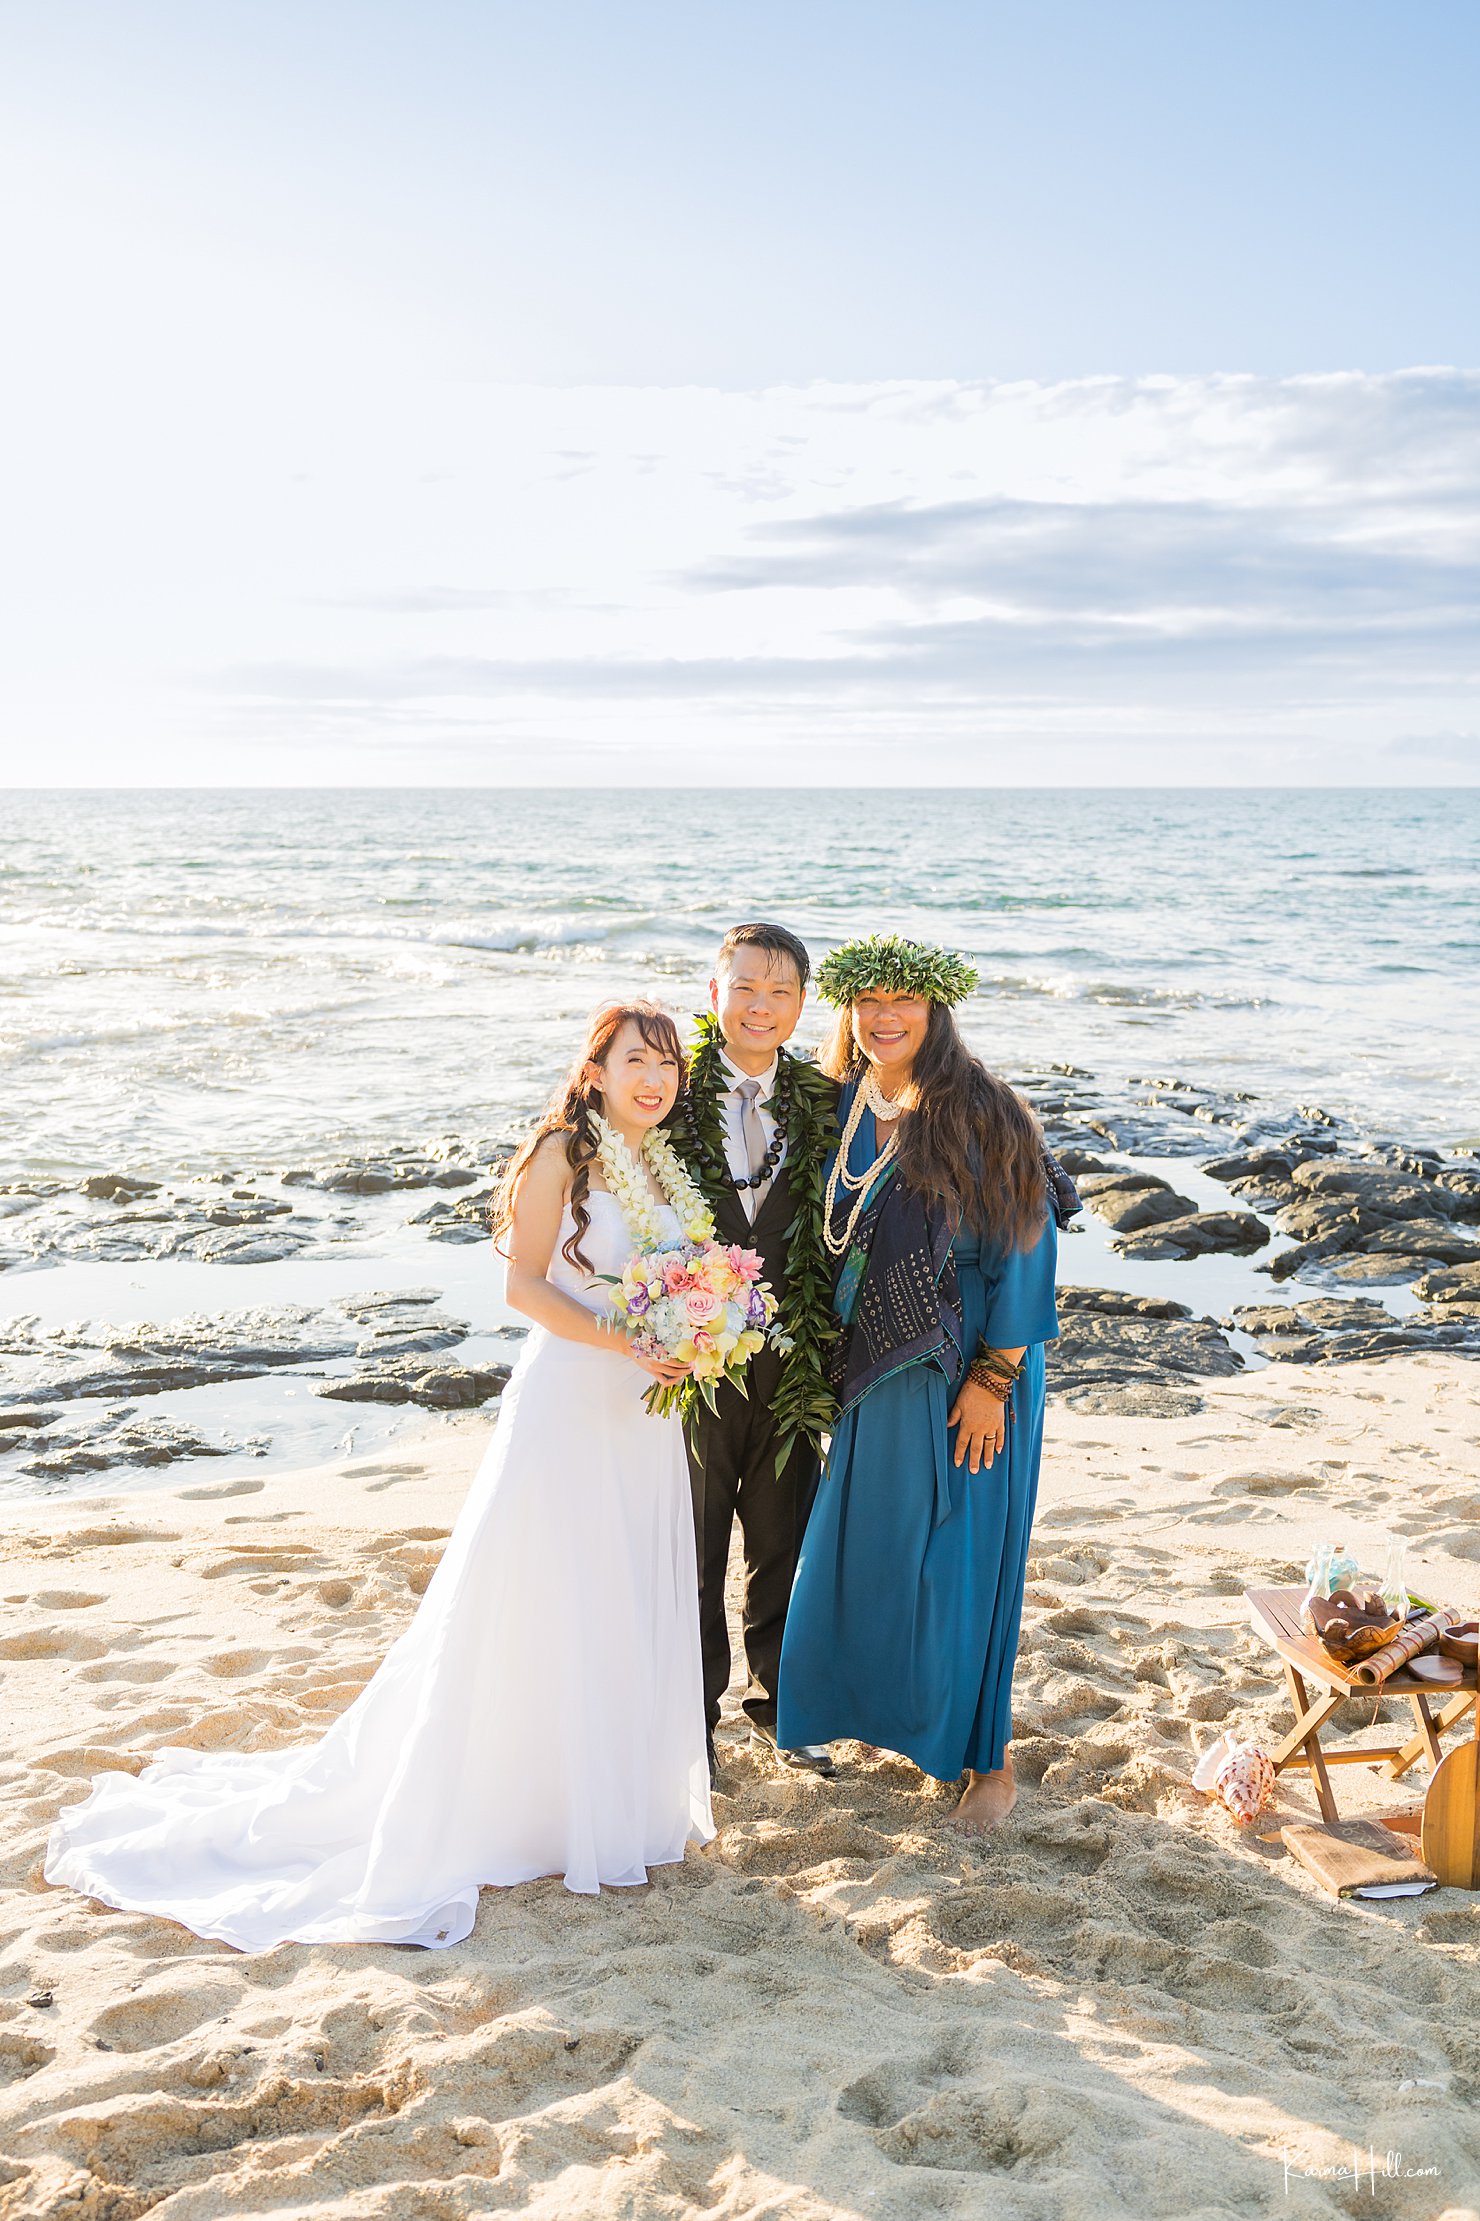 happy wedding in hawaii